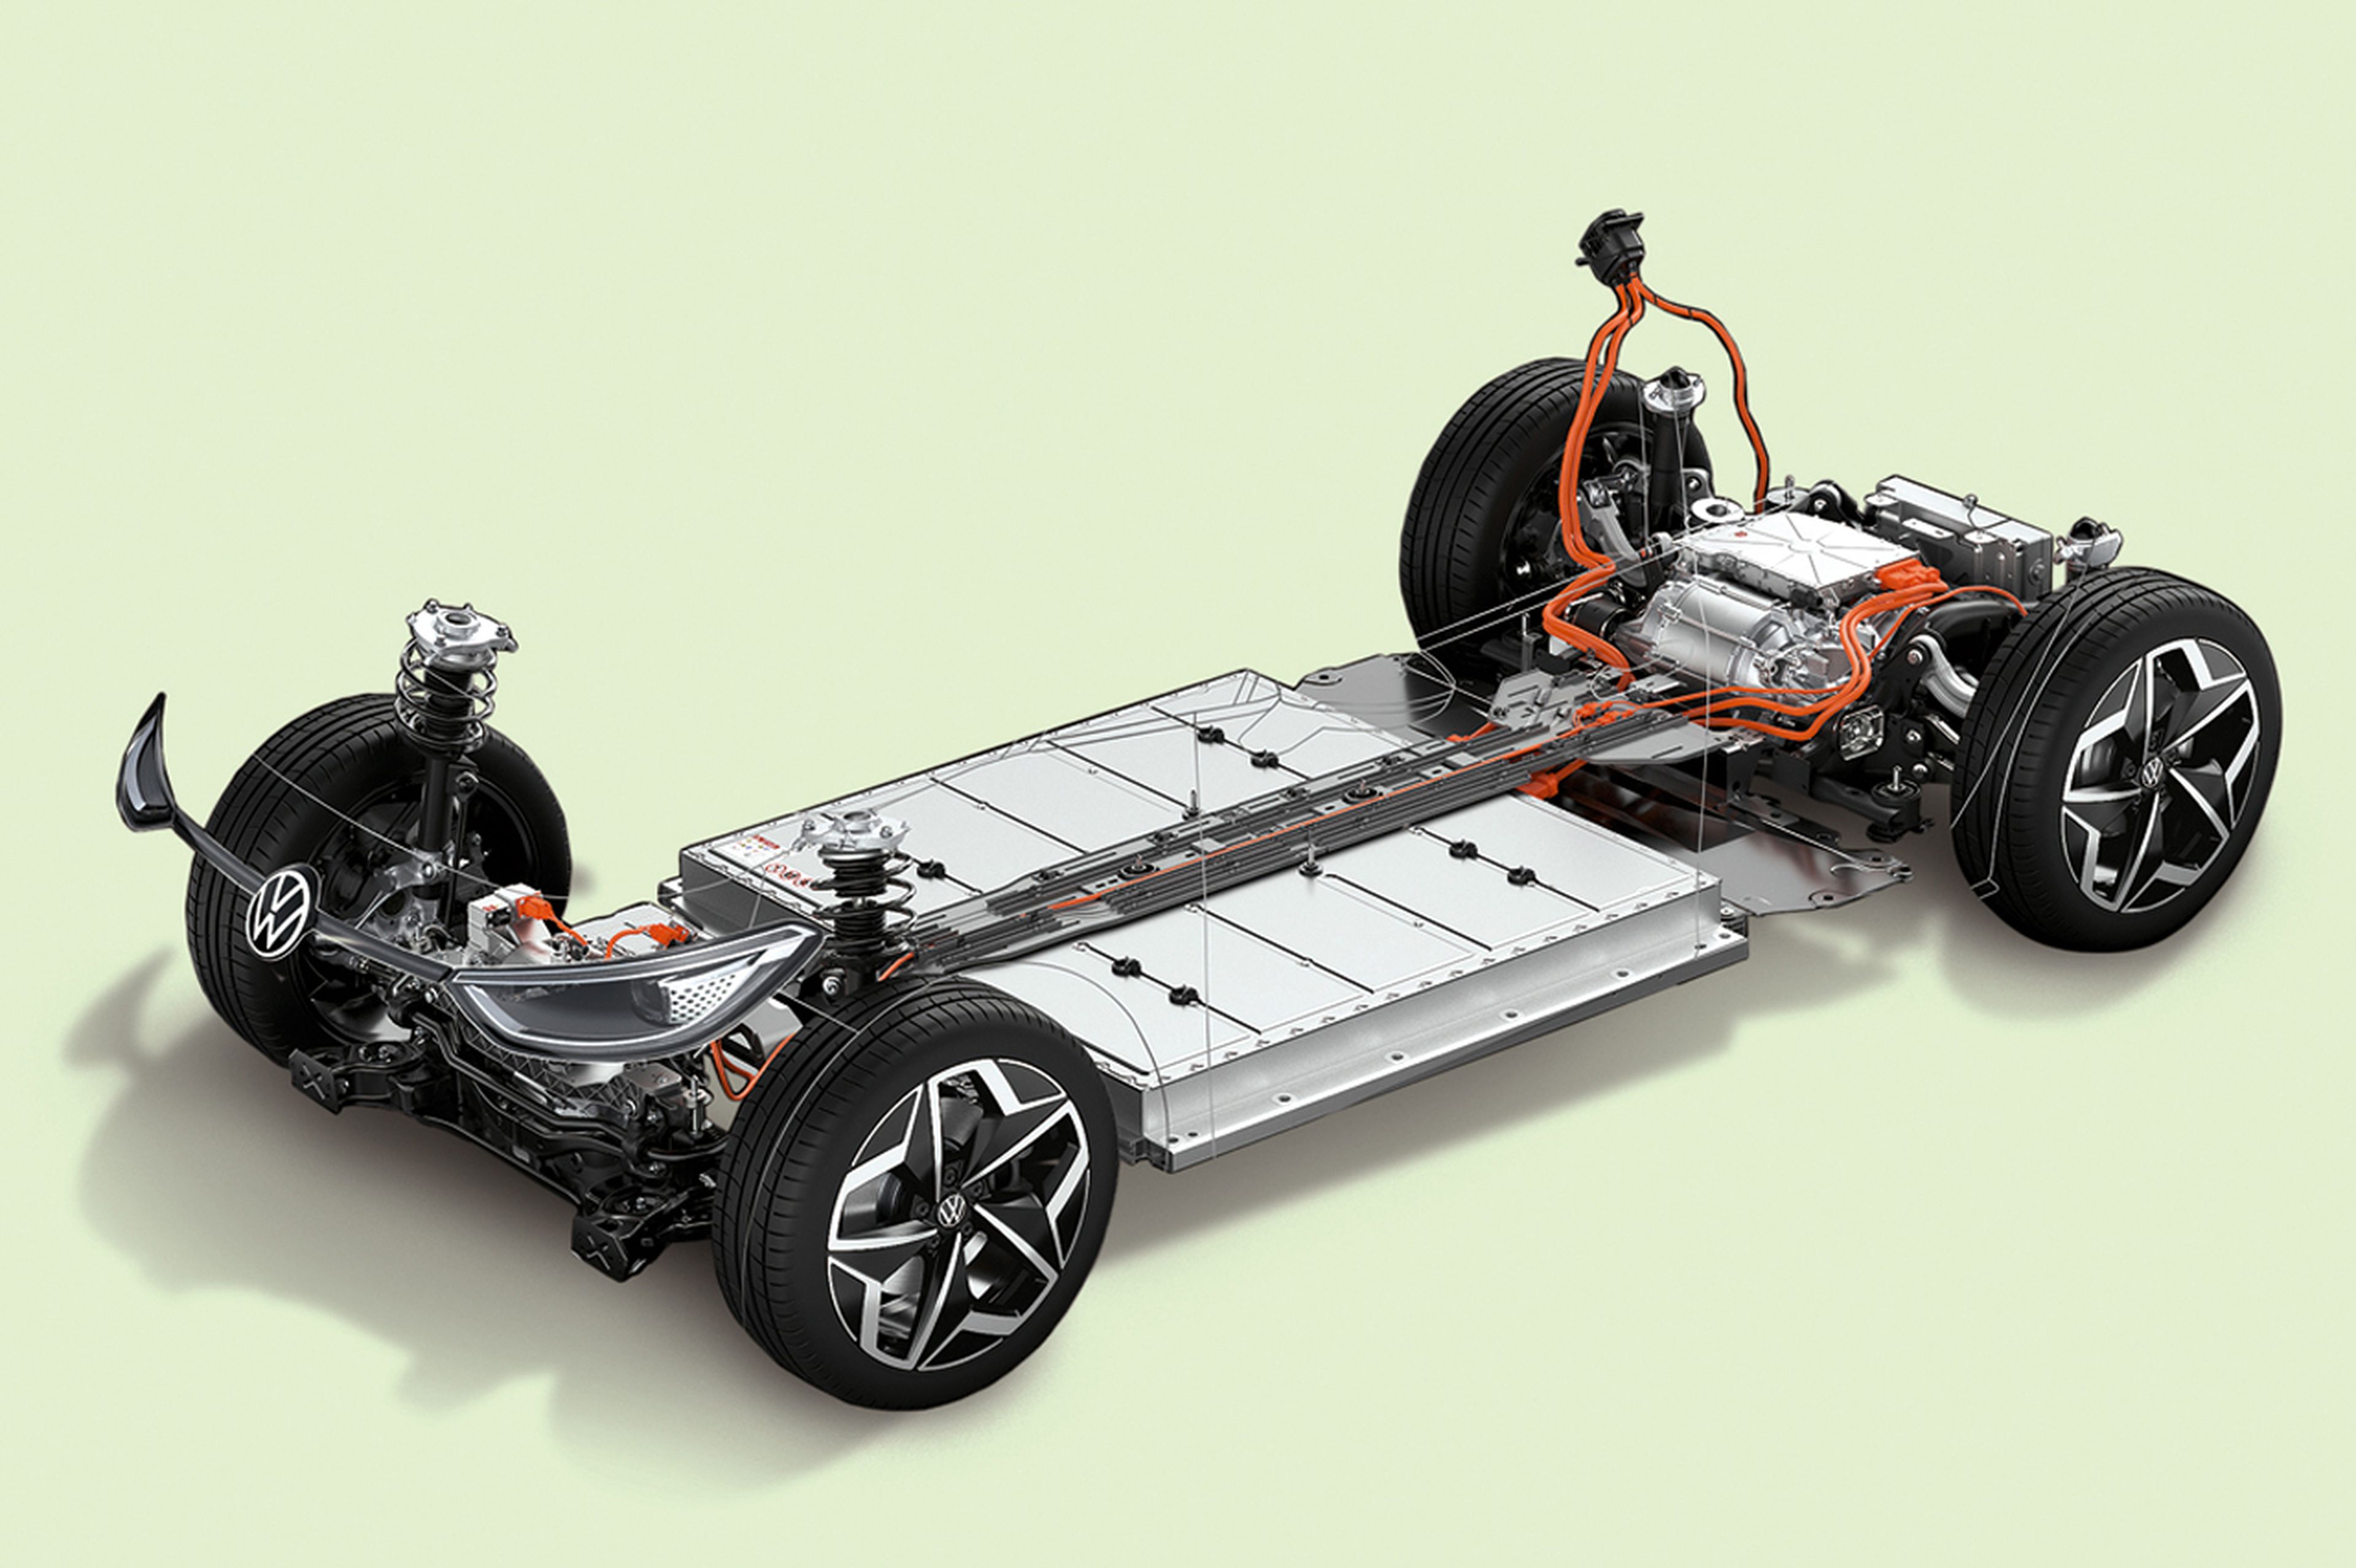 Así es el VW ID.3 por dentro: batería de 58 kWh de capacidad, motor de 100 kW, cargador incorporado de 7,4 kW...